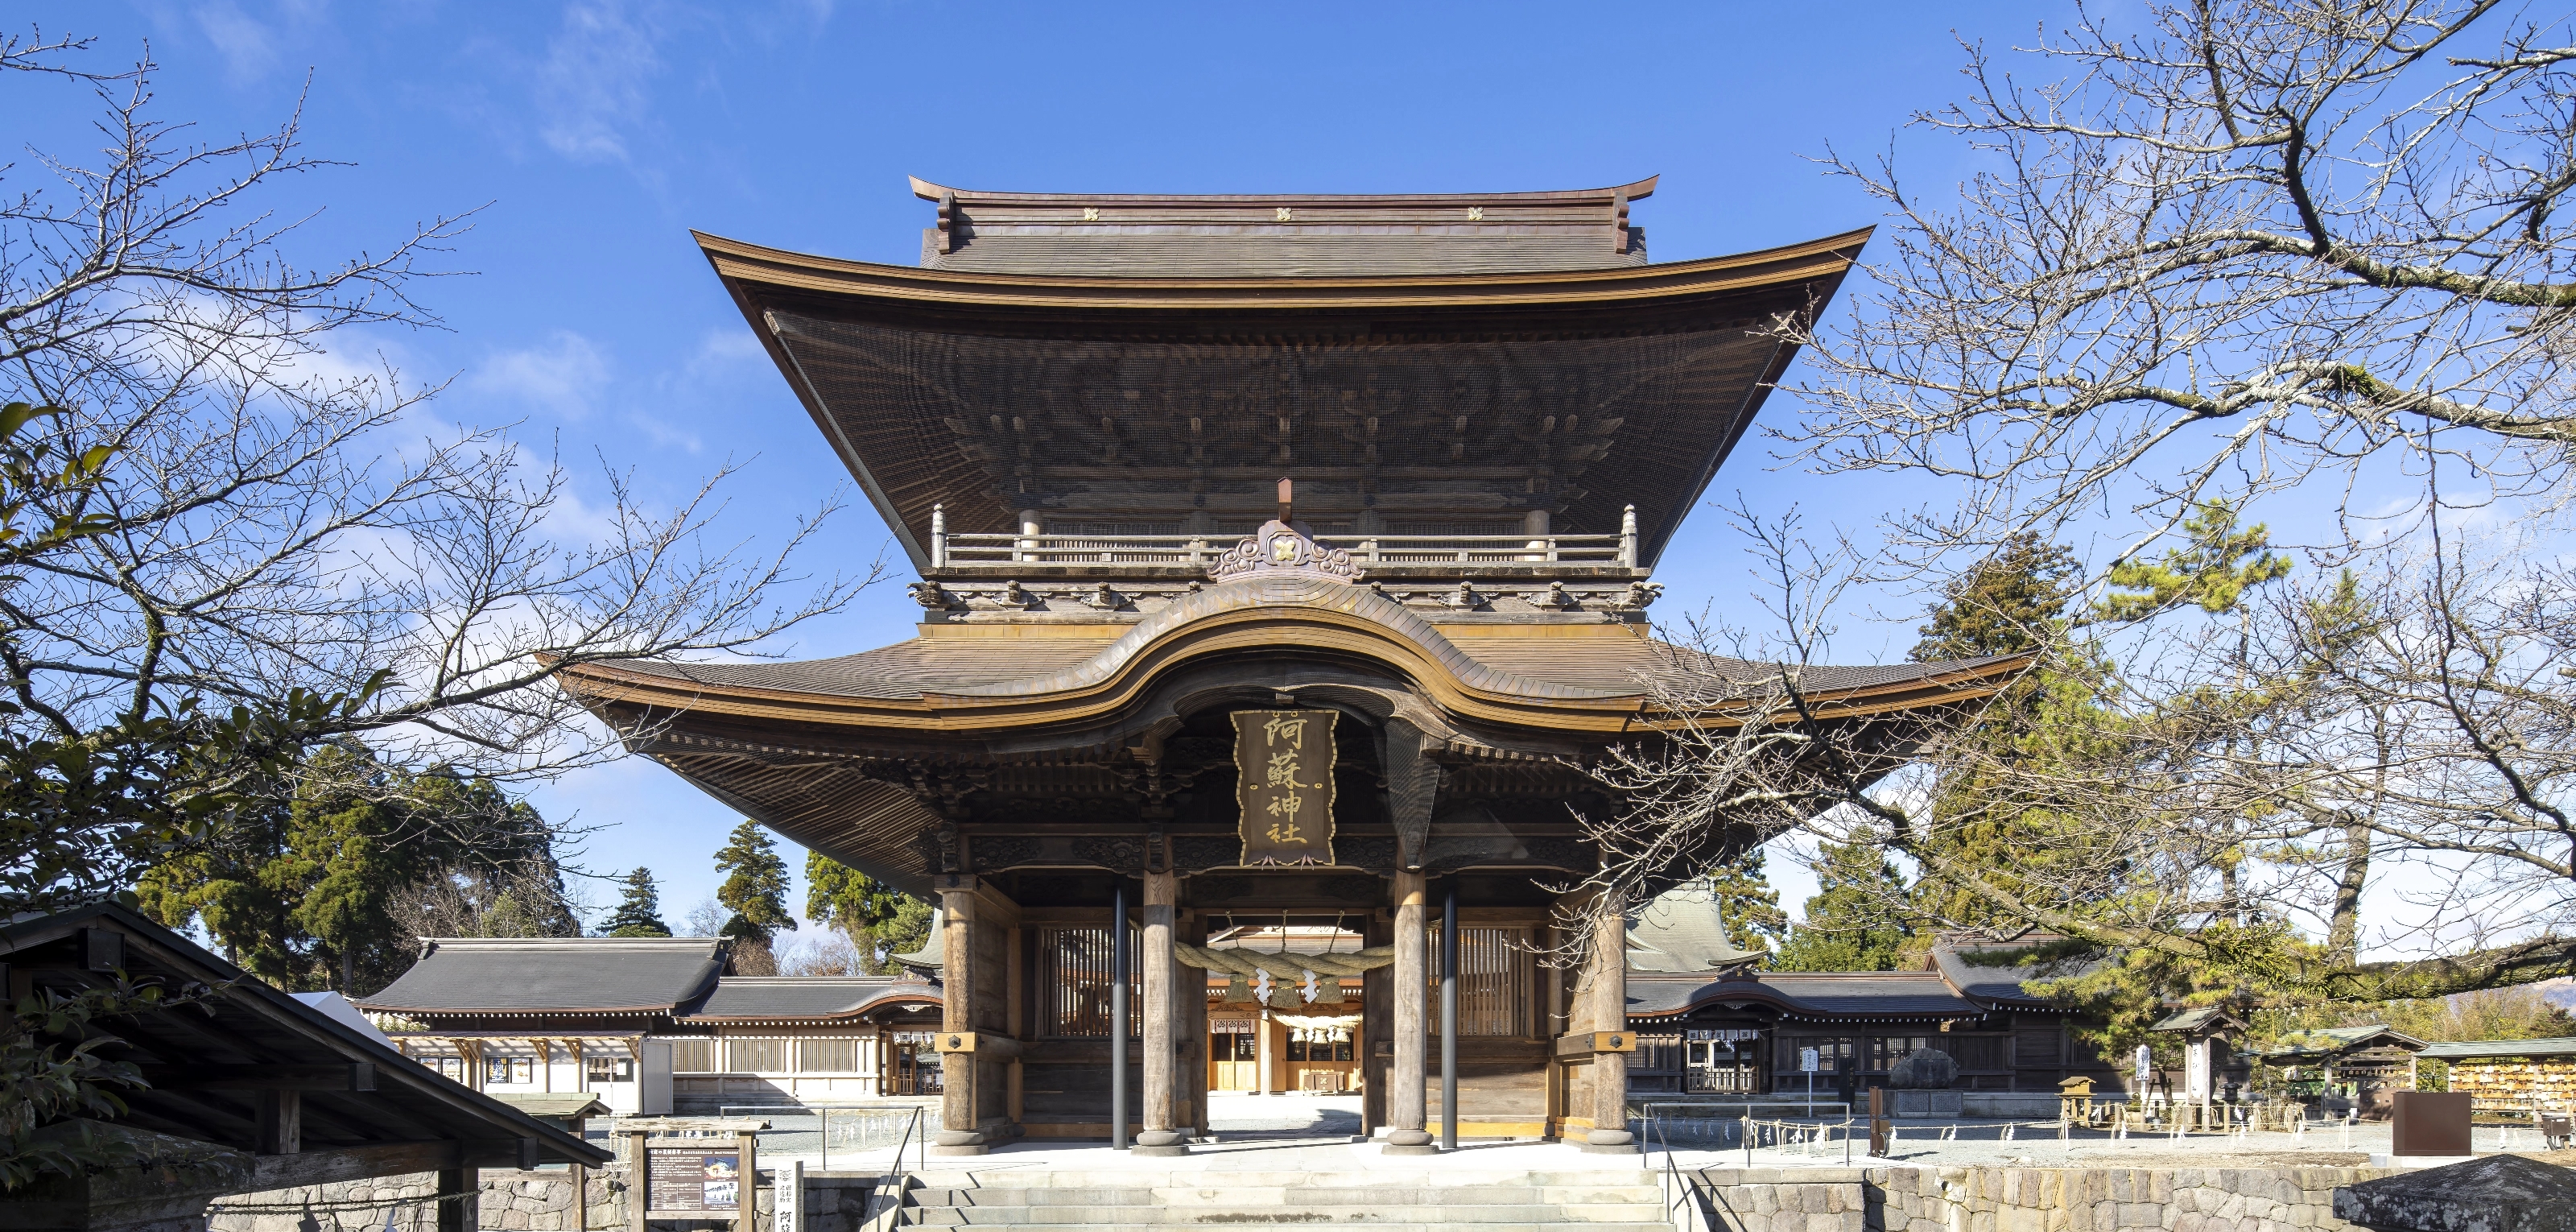 社寺建築　楼門の再建で阿蘇神社の復興完結 重要文化財 阿蘇神社楼門保存修理工事